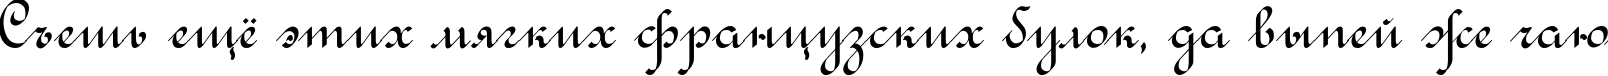 Пример написания шрифтом Rondo Calligraphic текста на русском